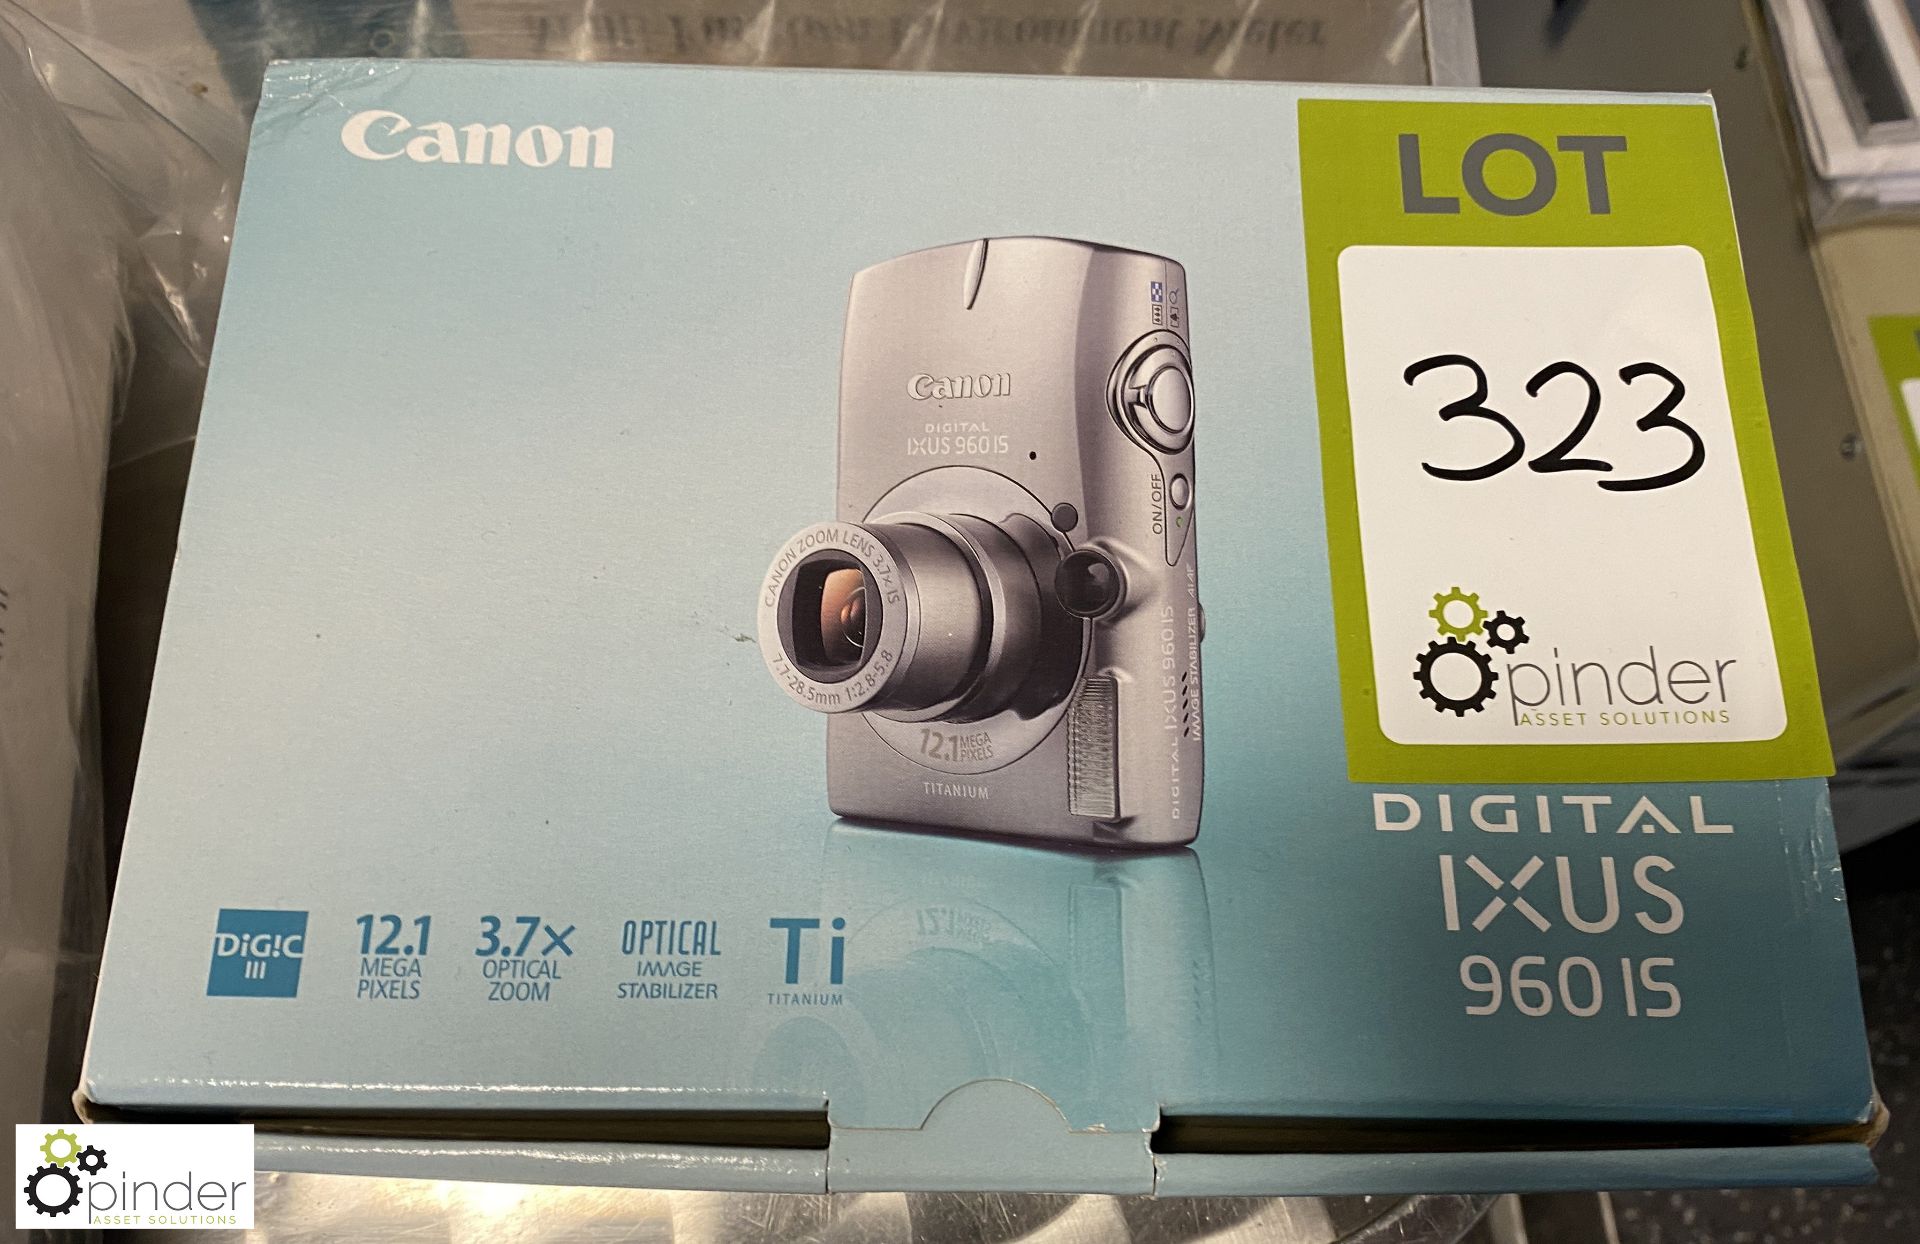 Canon IXUS 960 i5 Digital Camera